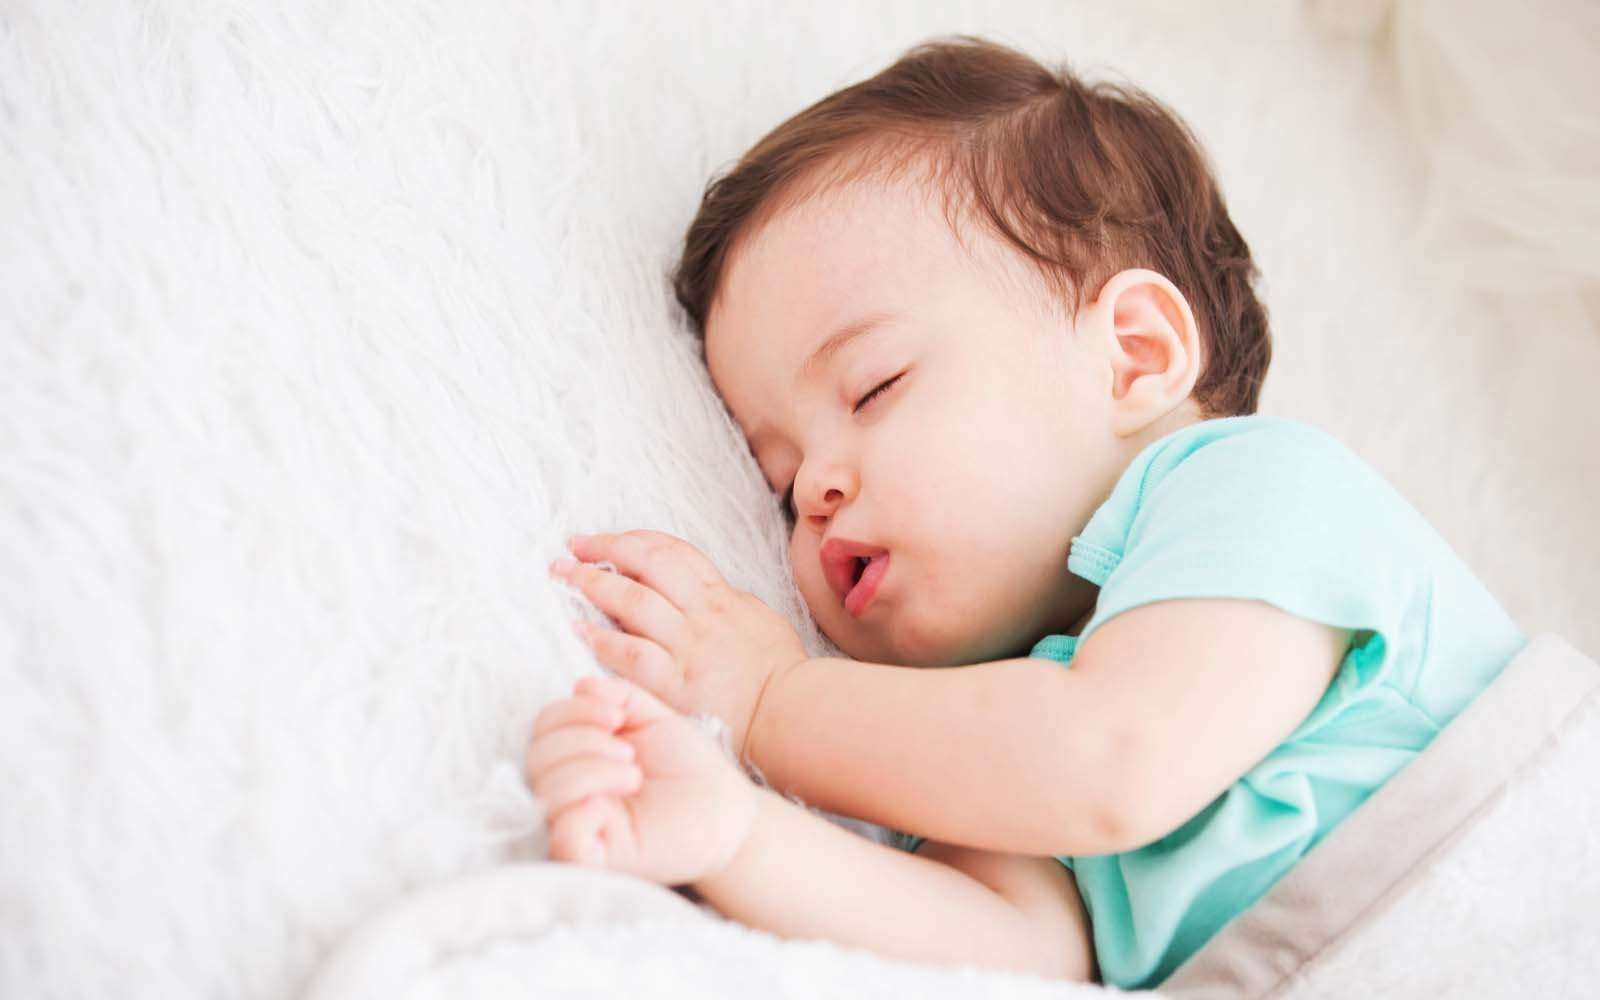 1970 में जन्मे बच्चों की तुलना में 2001 में जन्मे बच्चों की नींद 30 मिनट काम हुयी